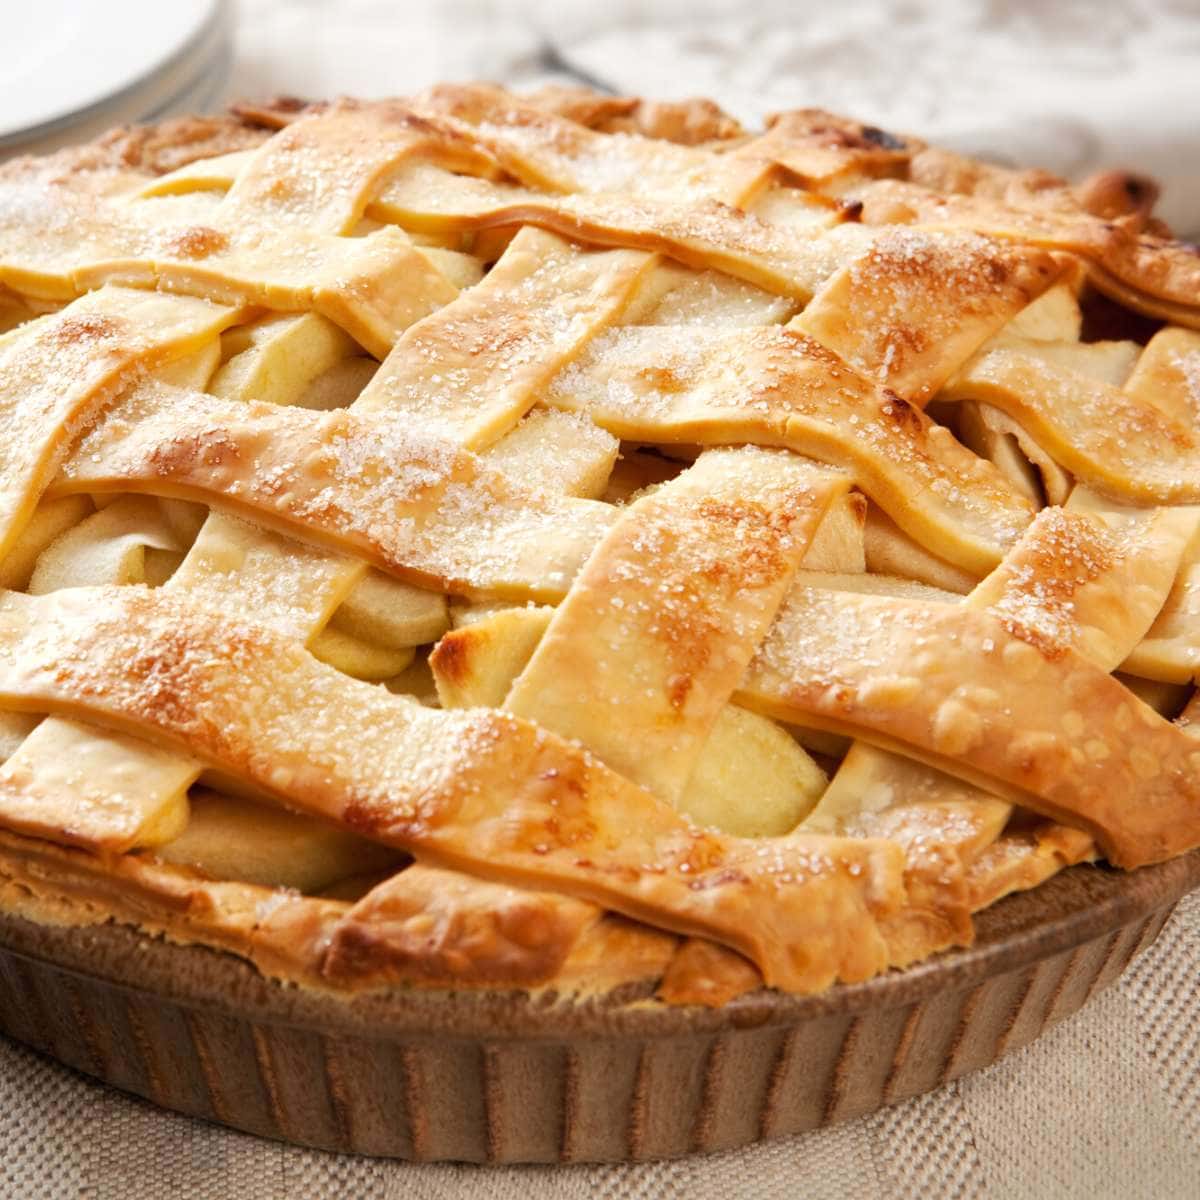 An apple pie.